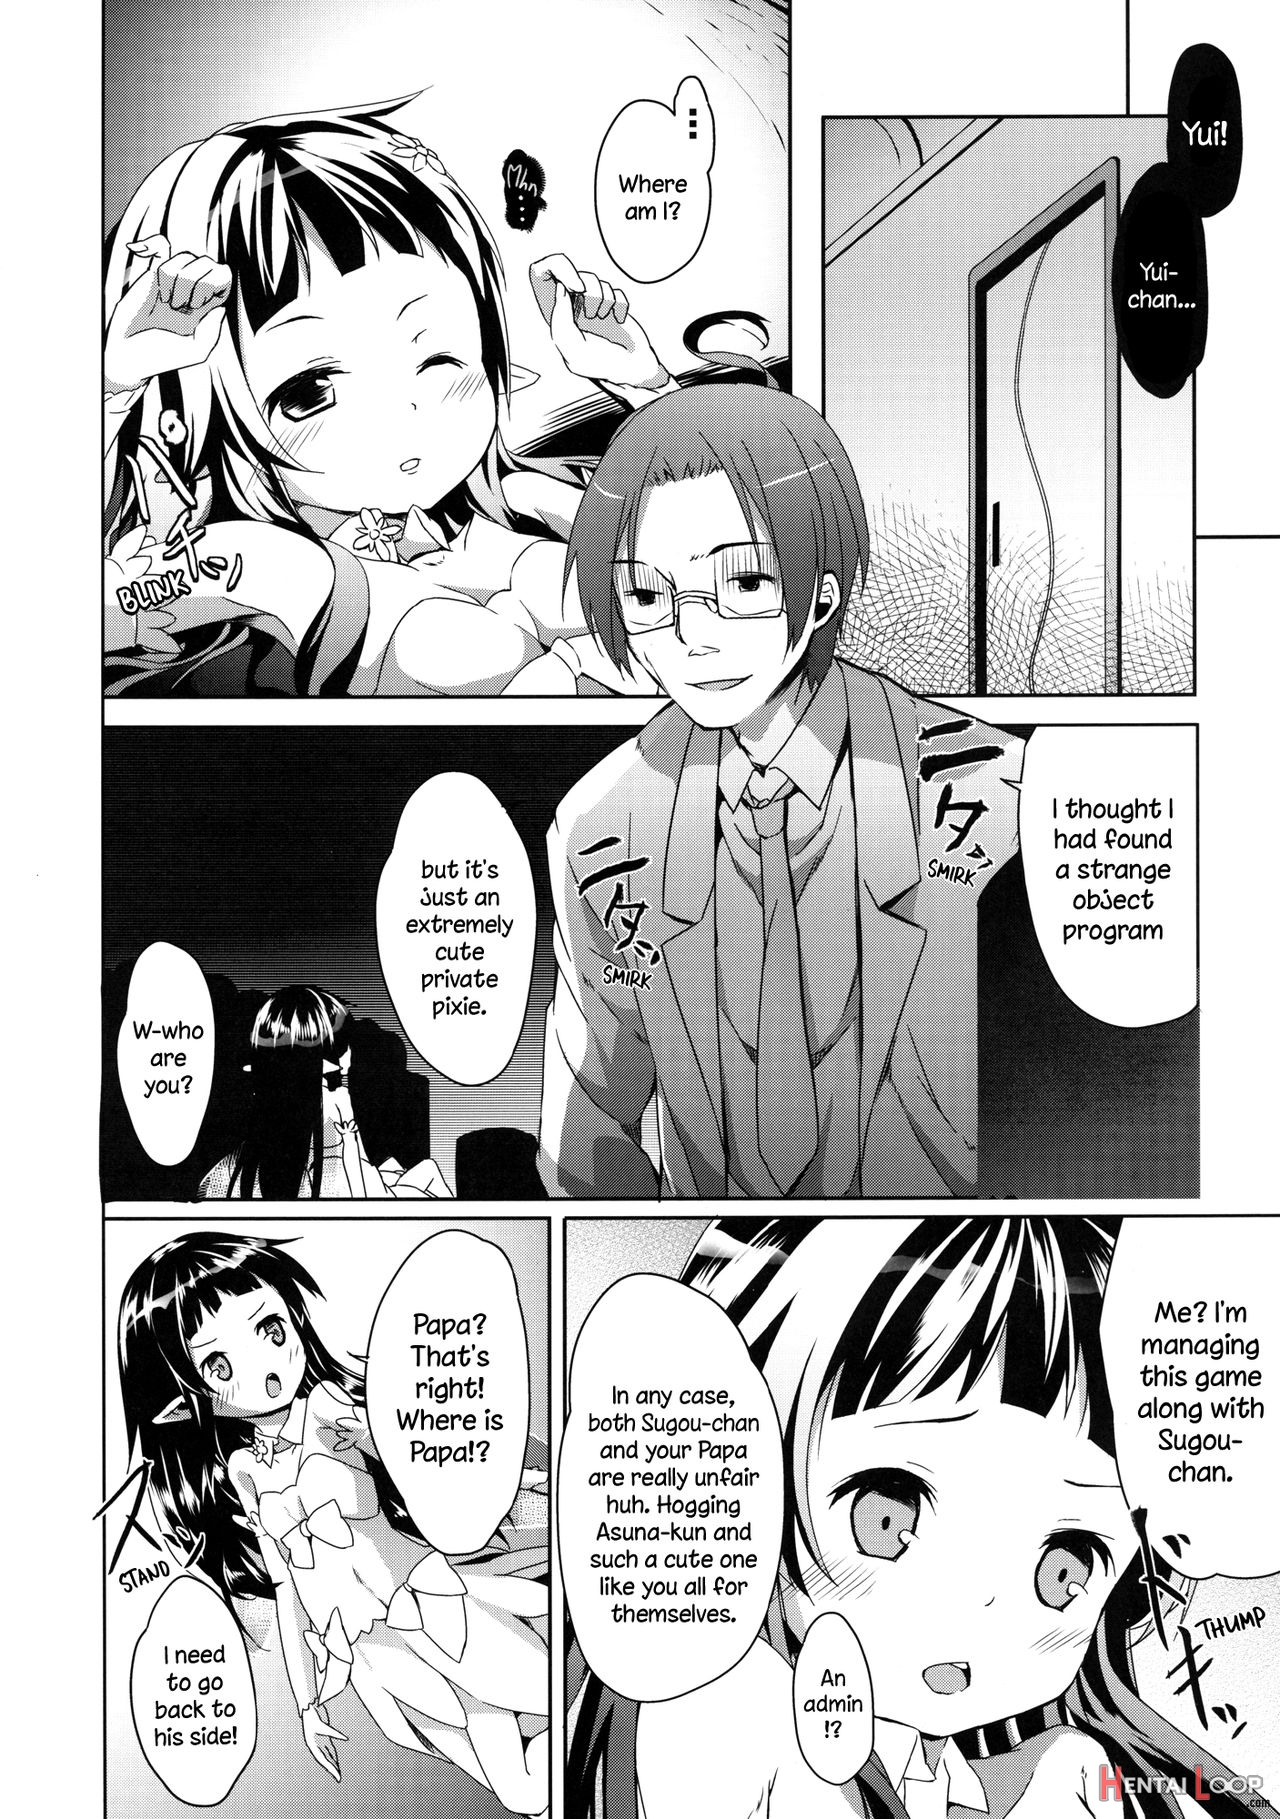 Yui-chan Deformation! page 4